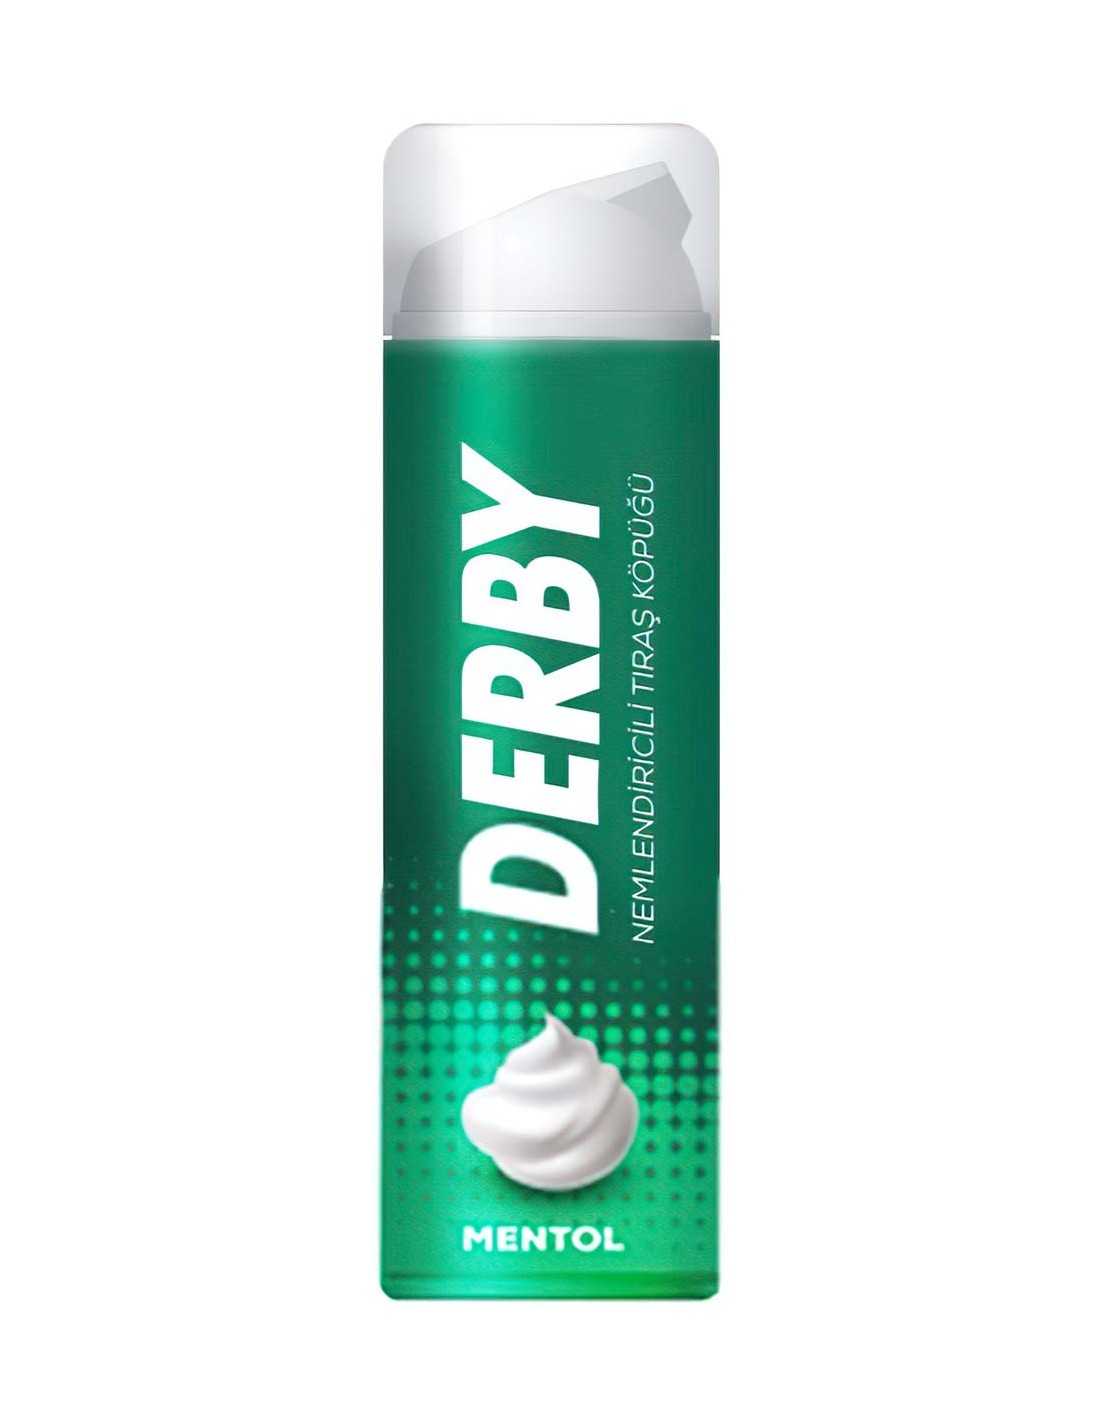 Derby Shaving Foam Menthol - hydratační pěna na holení s mentolovou vůní, 200 ml